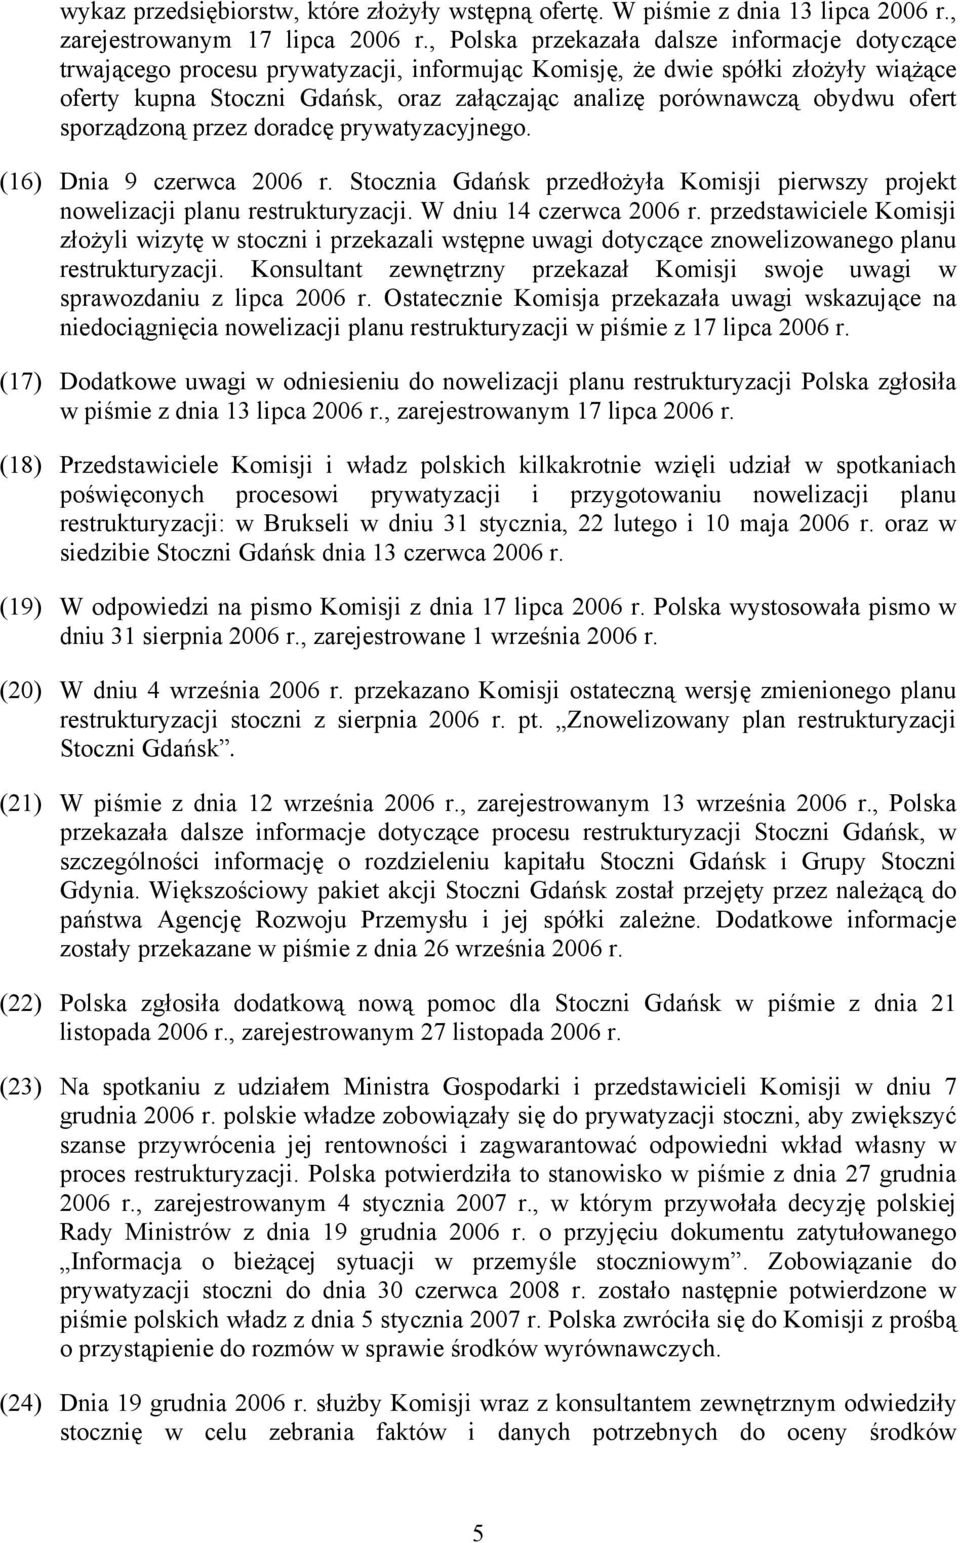 obydwu ofert sporządzoną przez doradcę prywatyzacyjnego. (16) Dnia 9 czerwca 2006 r. Stocznia Gdańsk przedłożyła Komisji pierwszy projekt nowelizacji planu restrukturyzacji. W dniu 14 czerwca 2006 r.